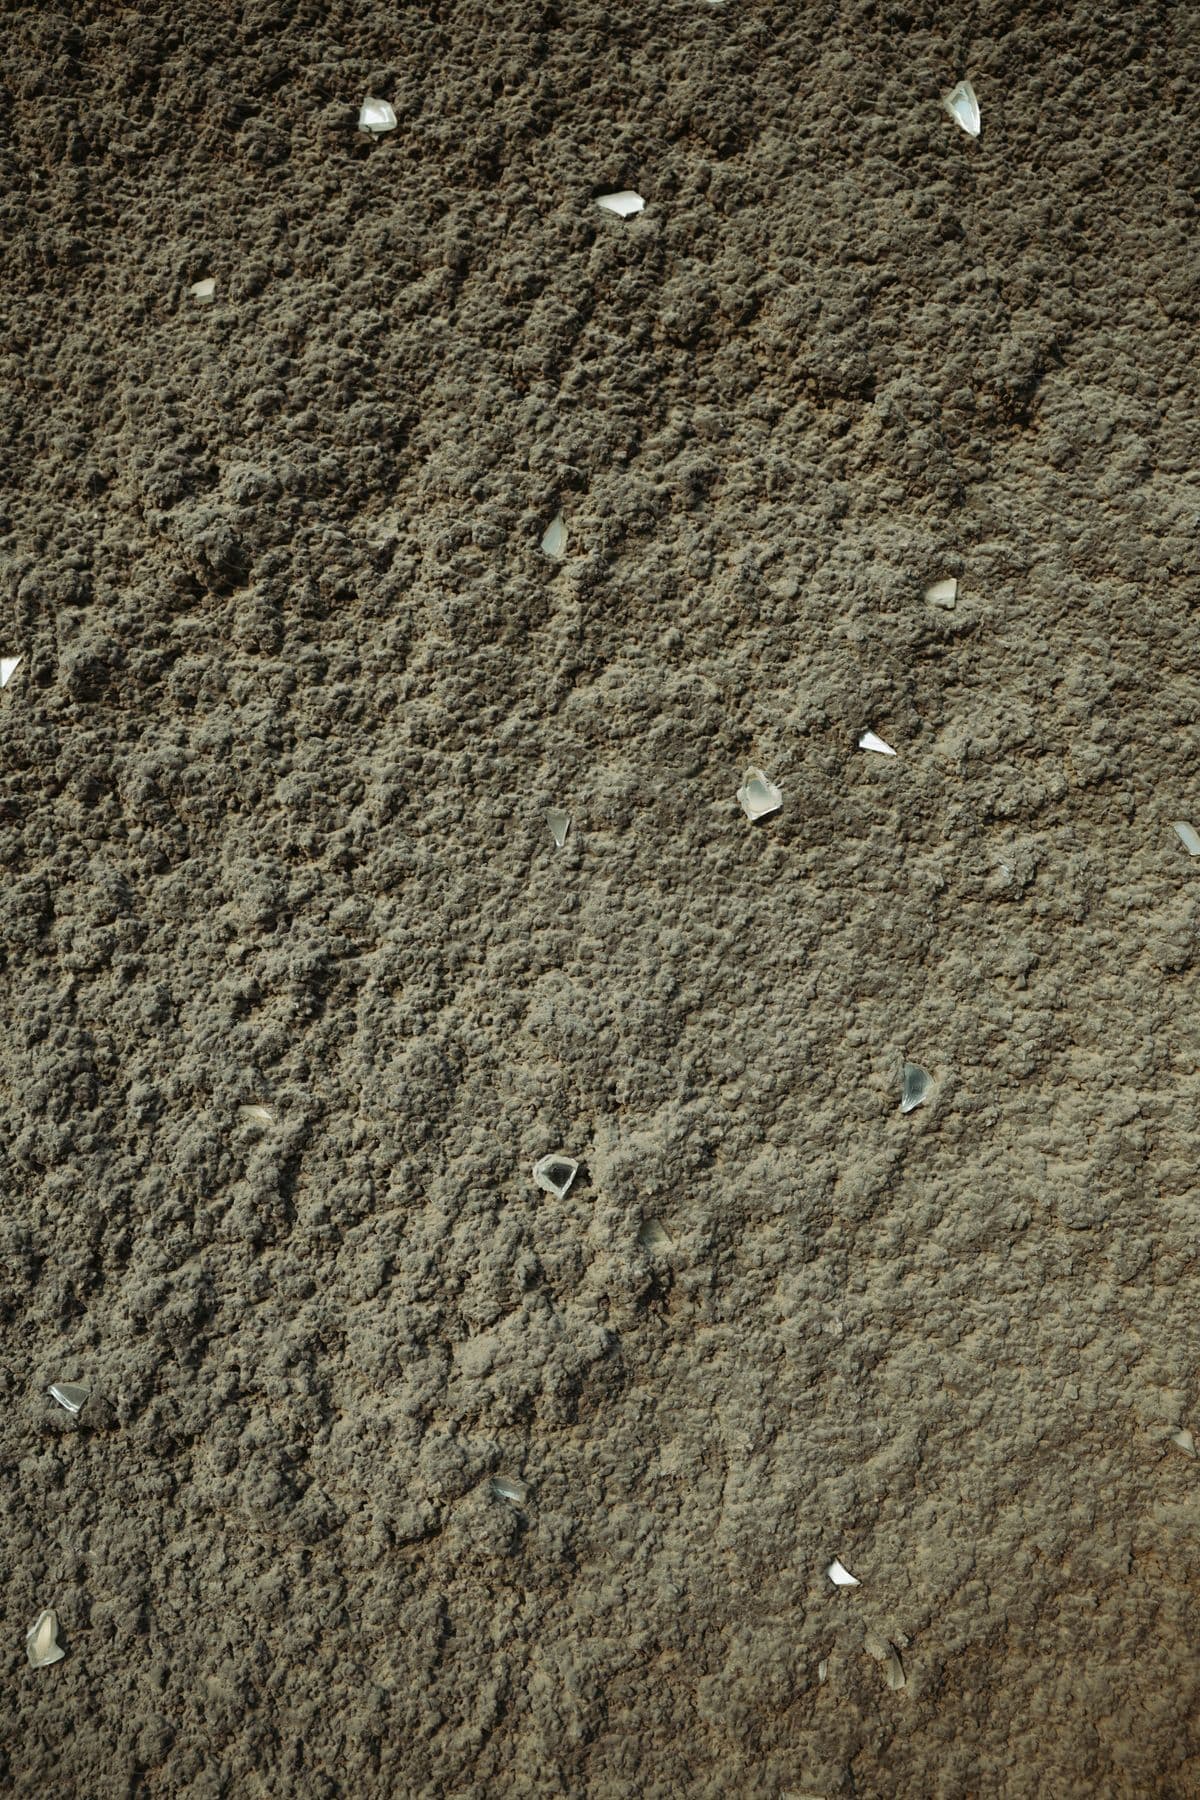 White flecks over brown soil